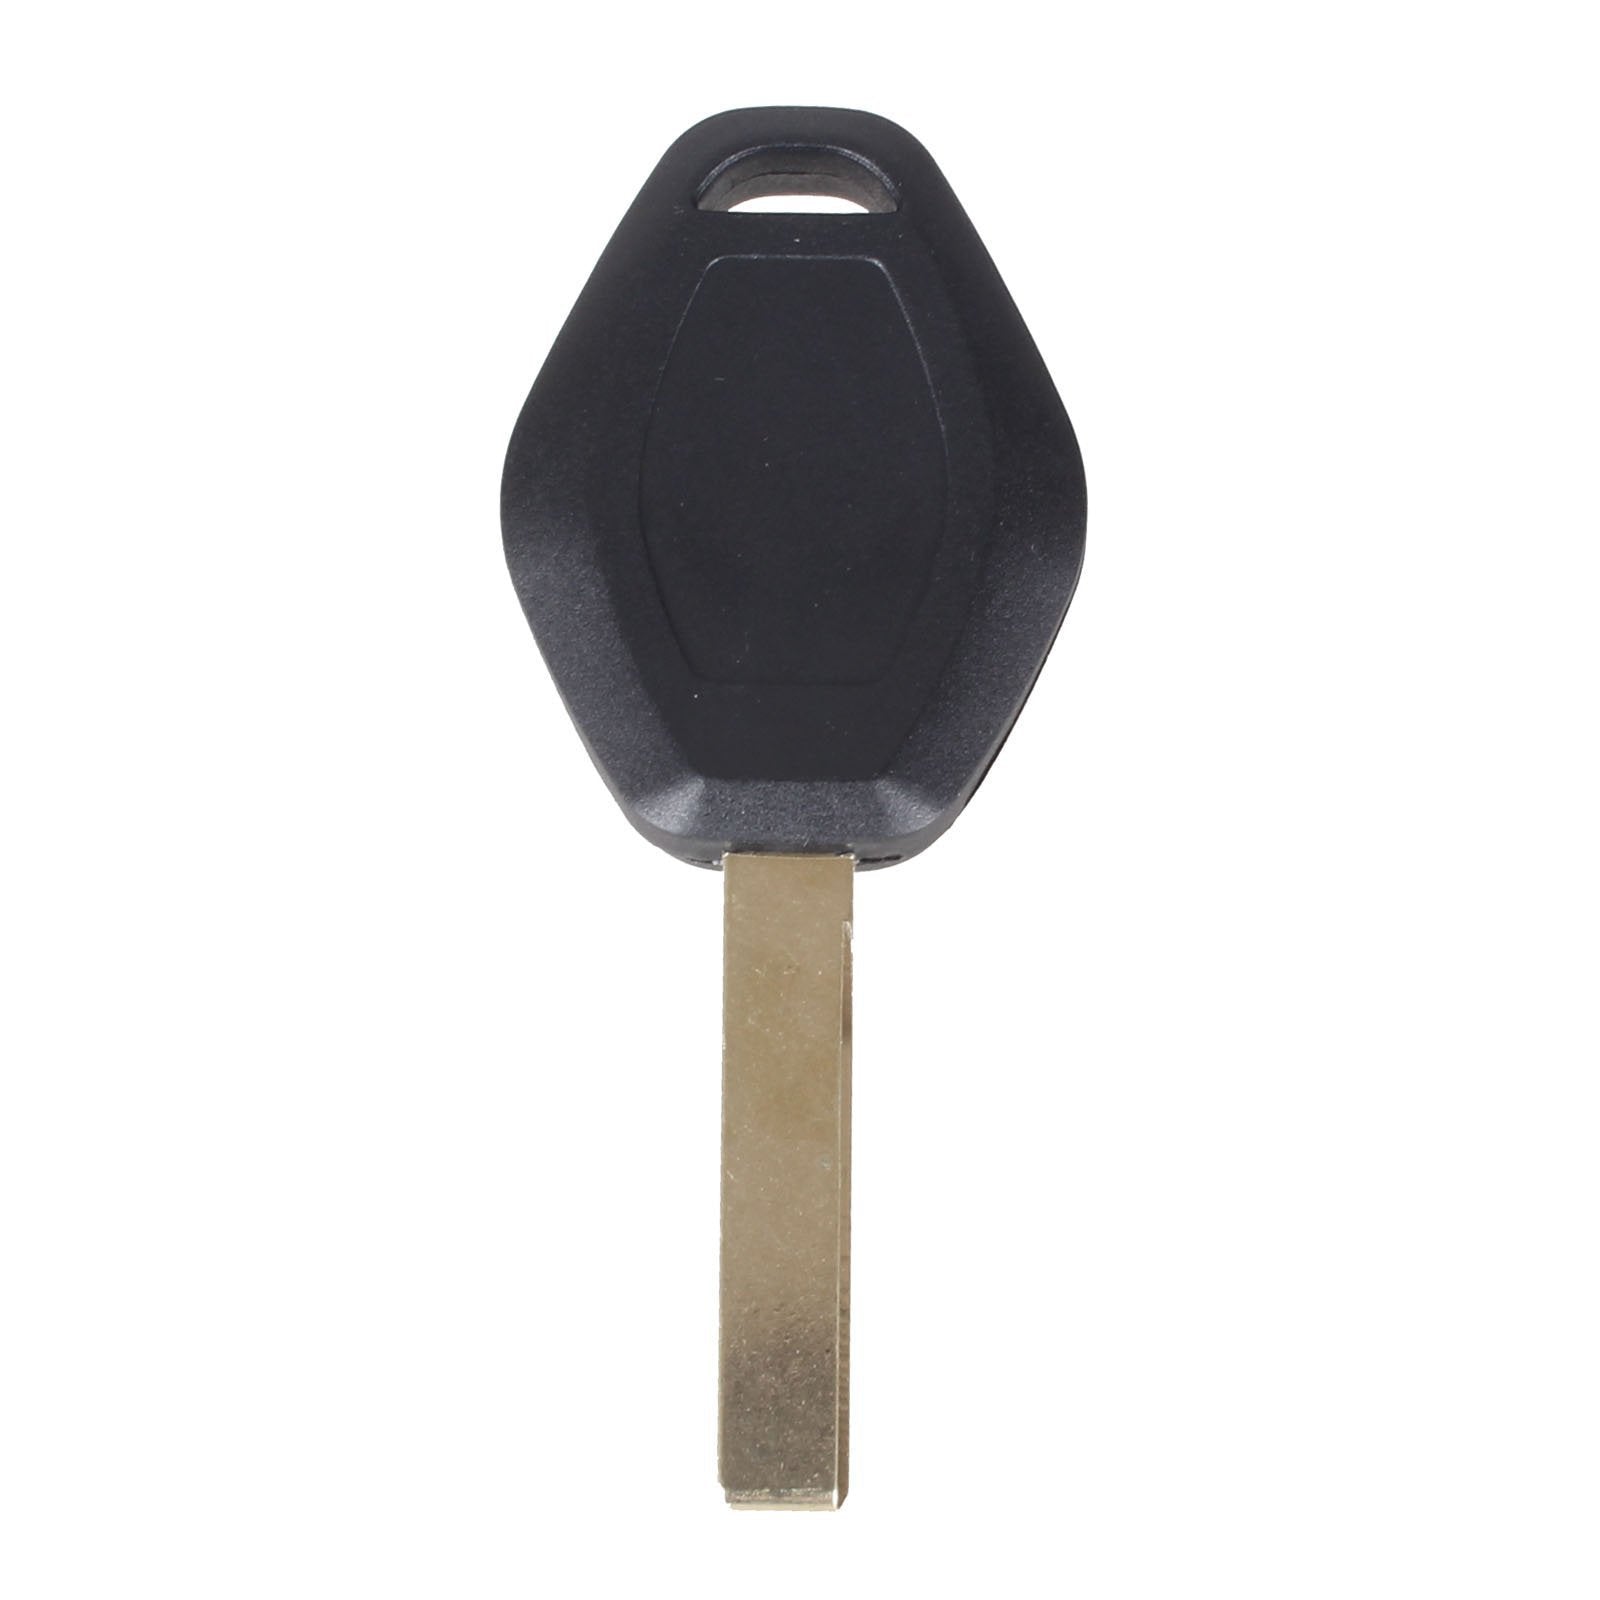 Fekete színű, 3 gombos BMW kulcs, kulcsház nyers kulcsszárral.